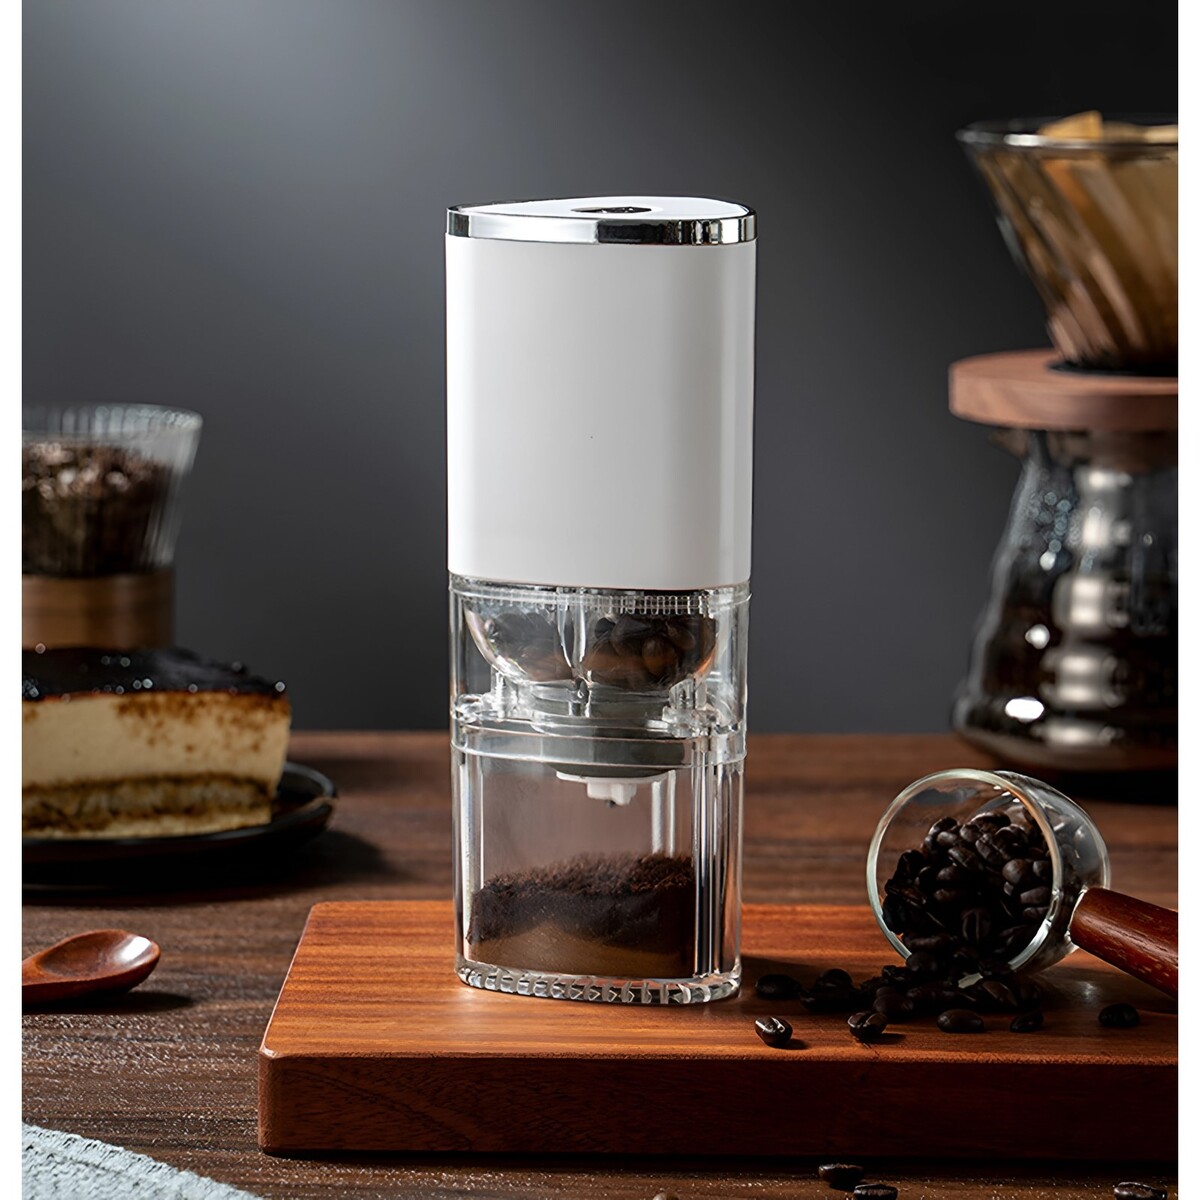 Портативная электрическая кофемолка lcg-05, 1500 ма/ч, 13 вт, 25 грамм, белая кофемолка керамическая ручная tima коричневый